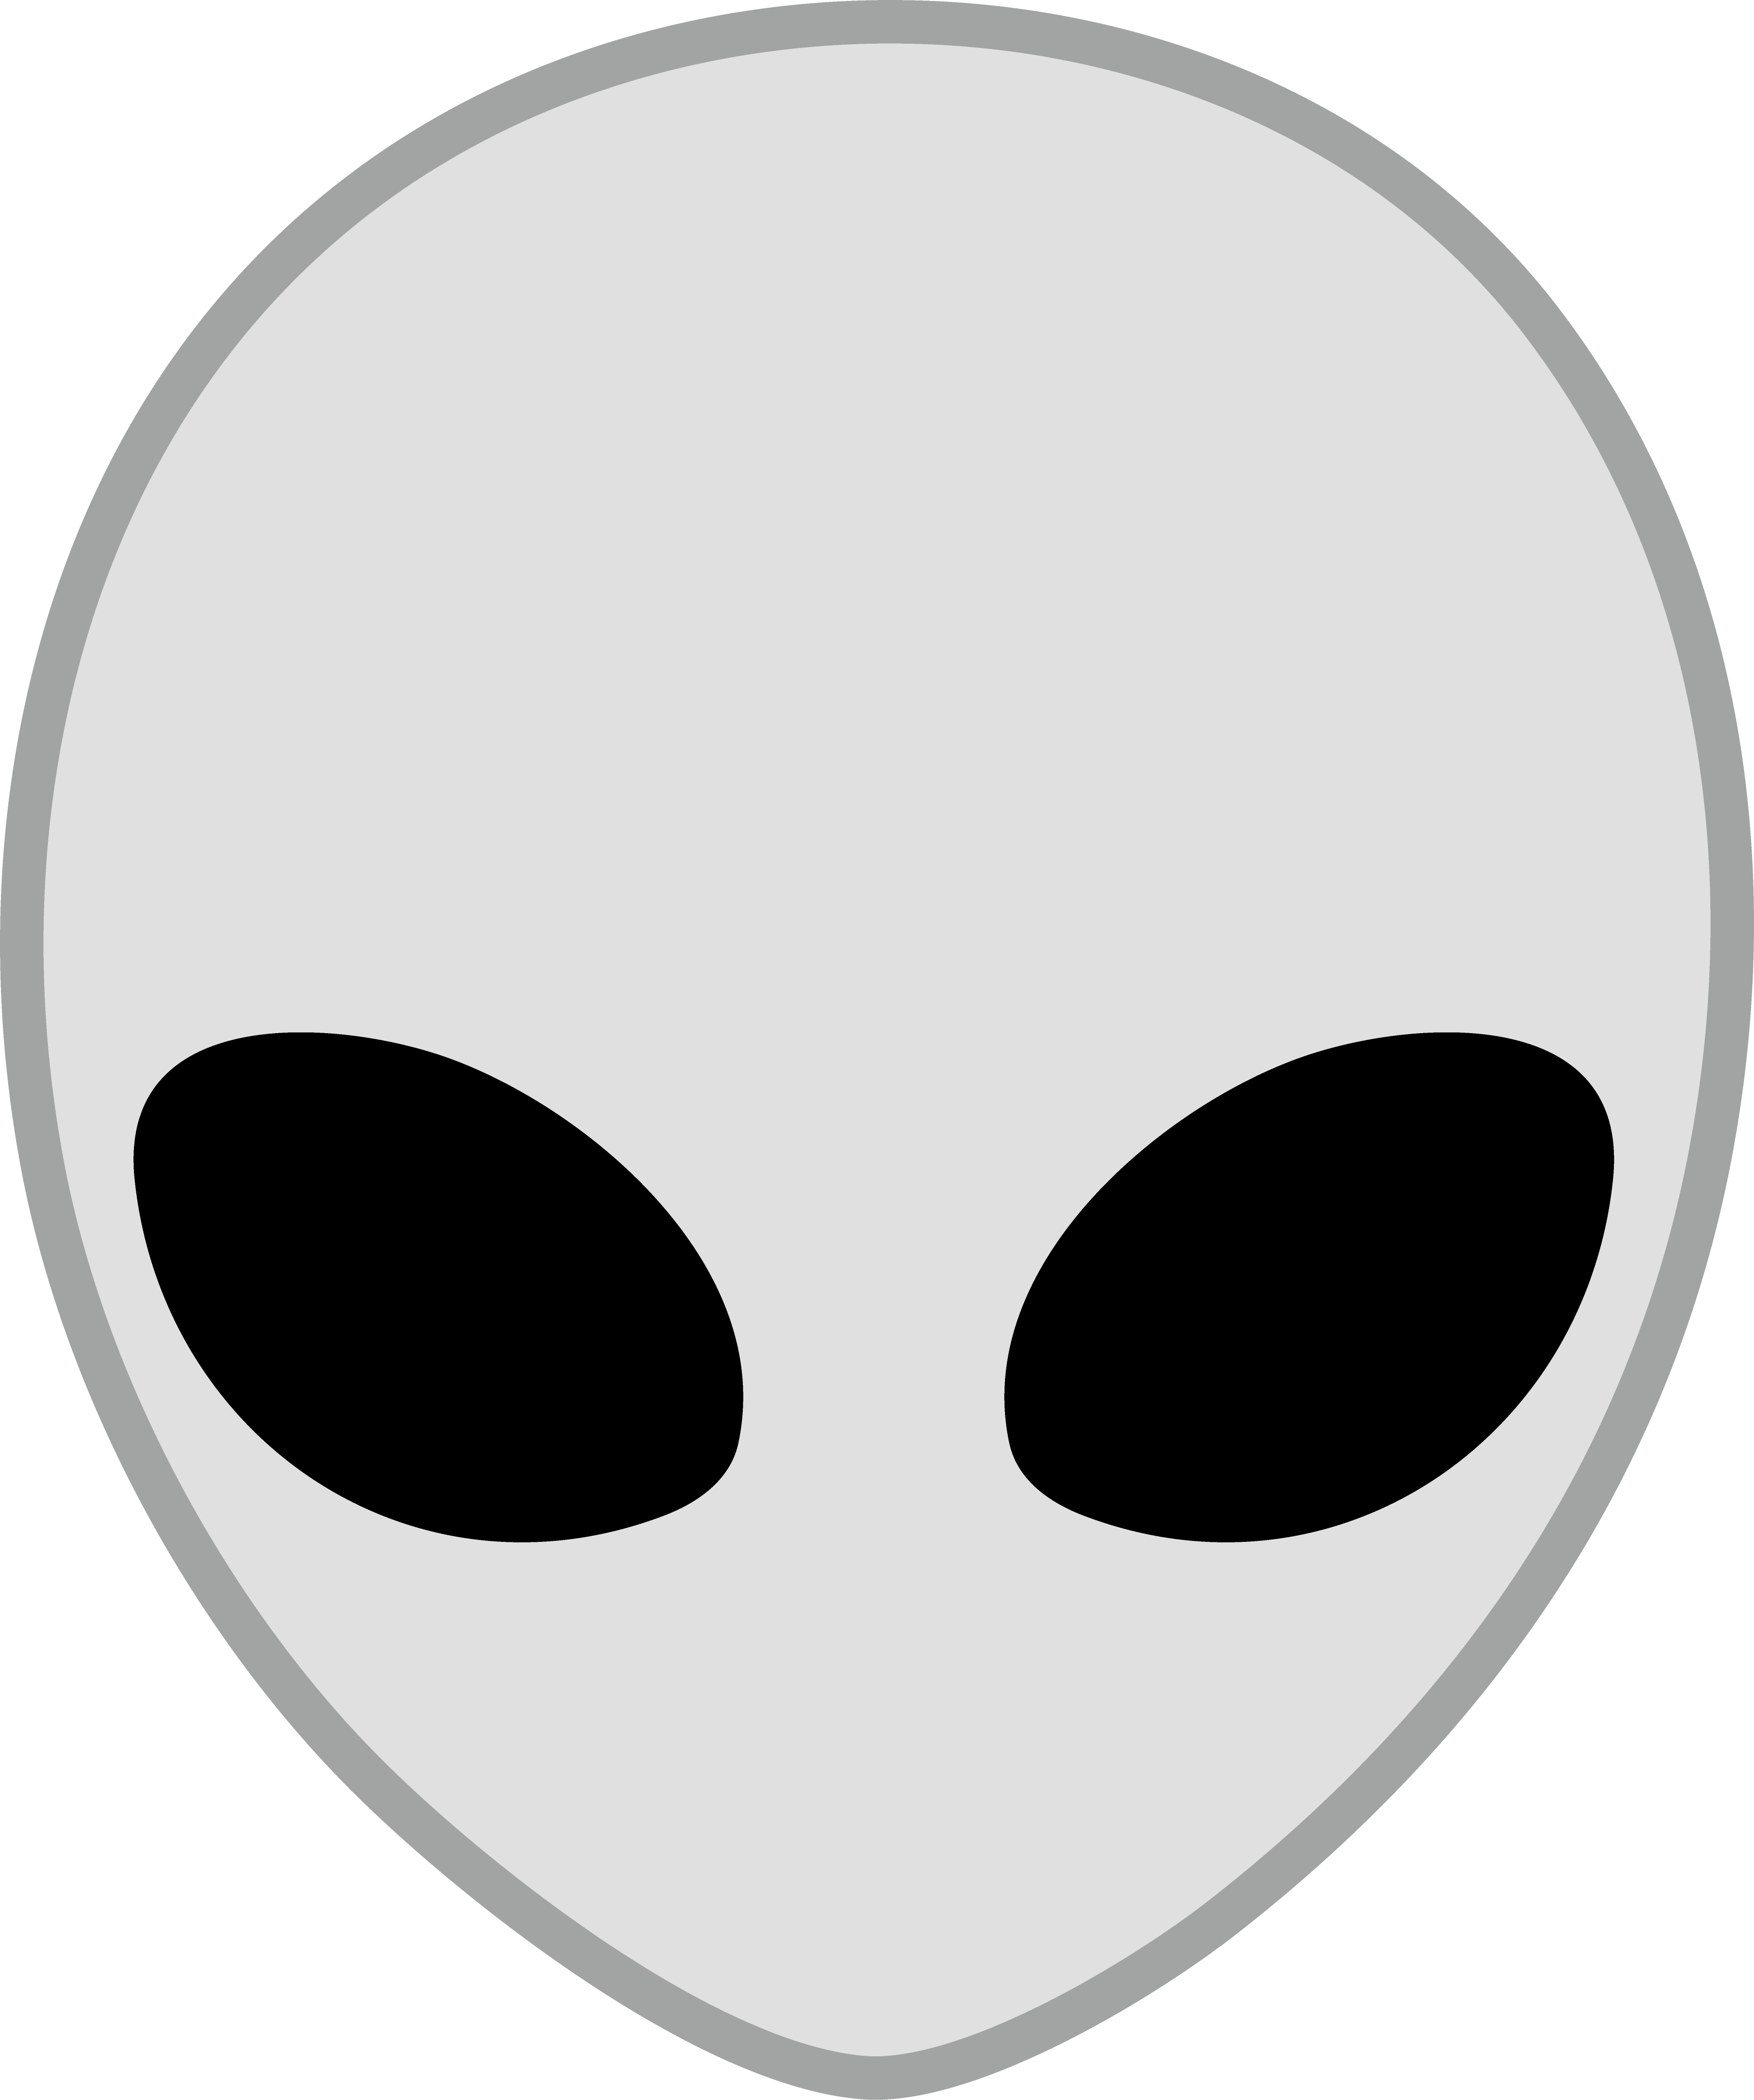 Alien head clip art - ClipartFox